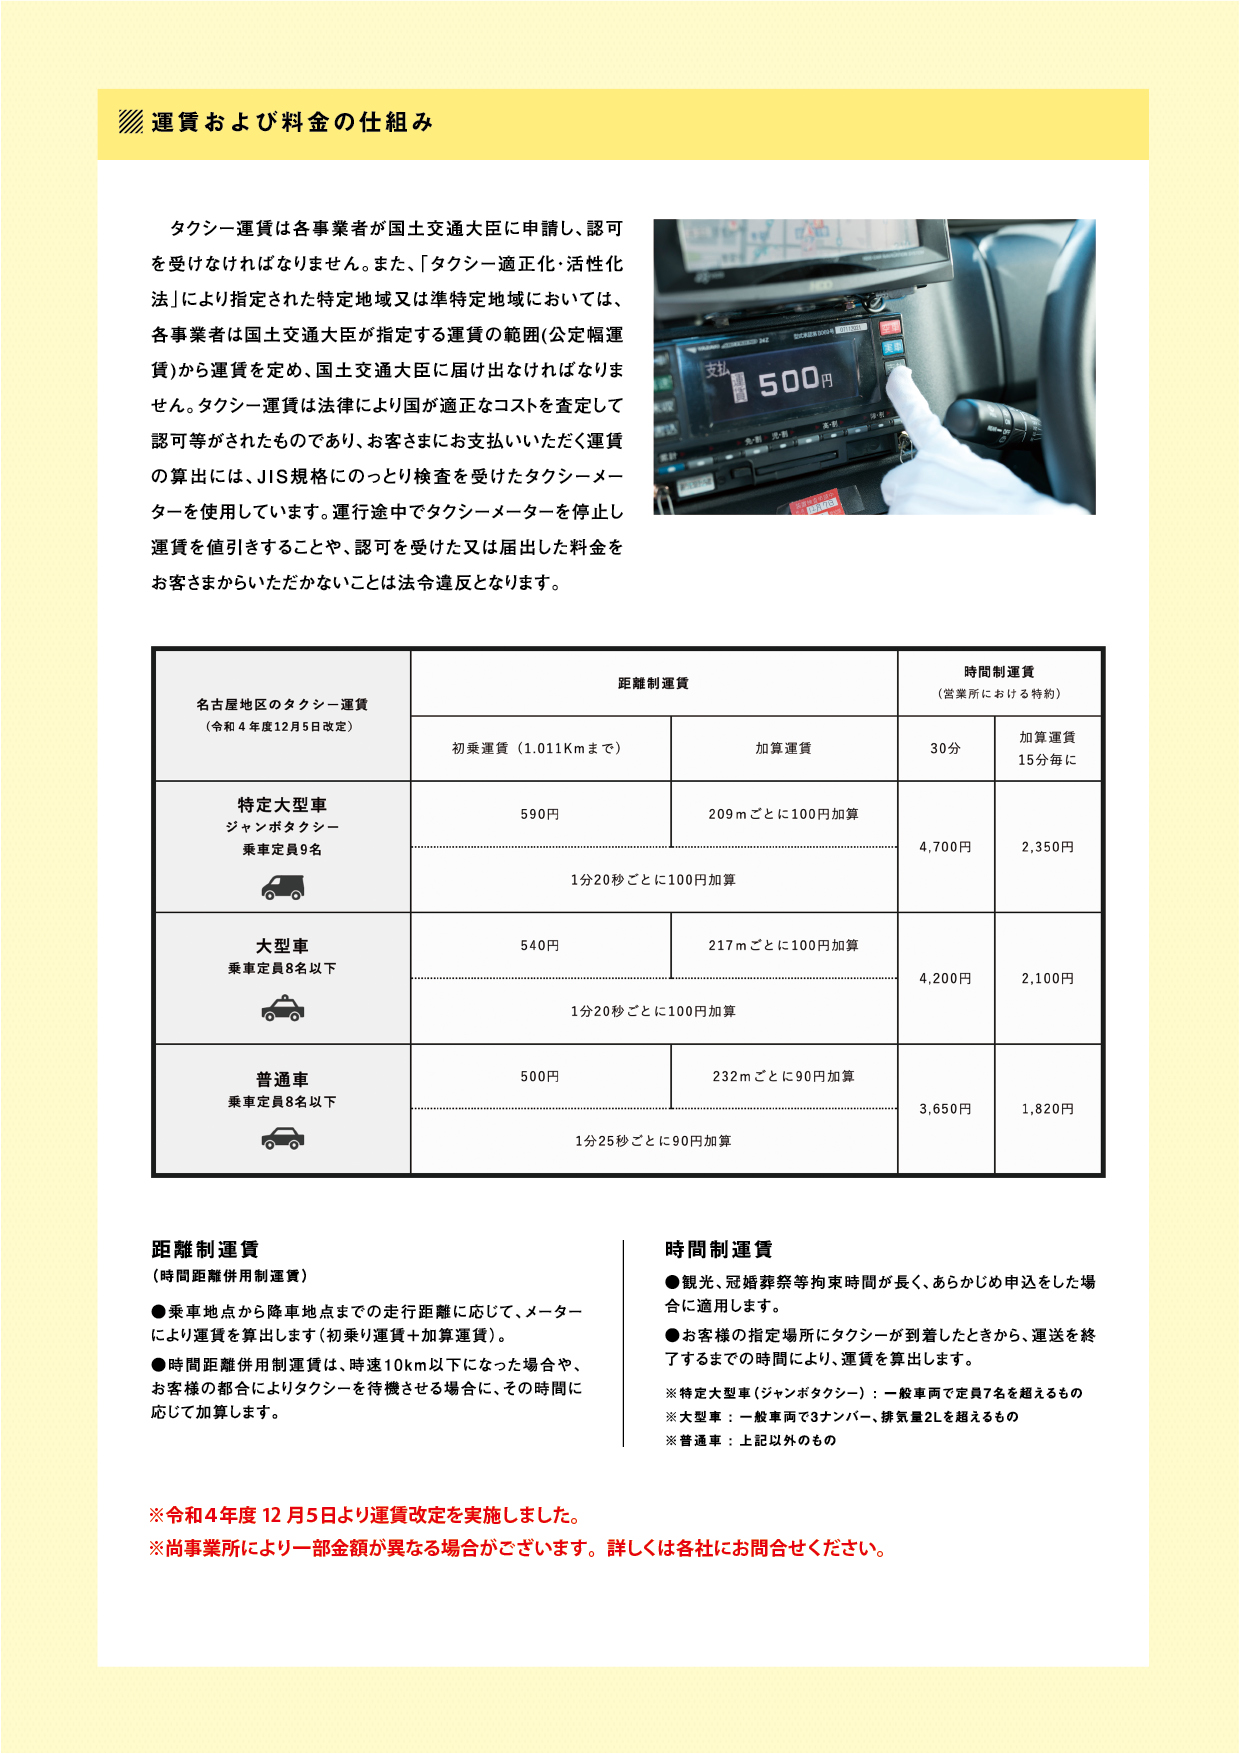 名古屋のタクシーについての情報